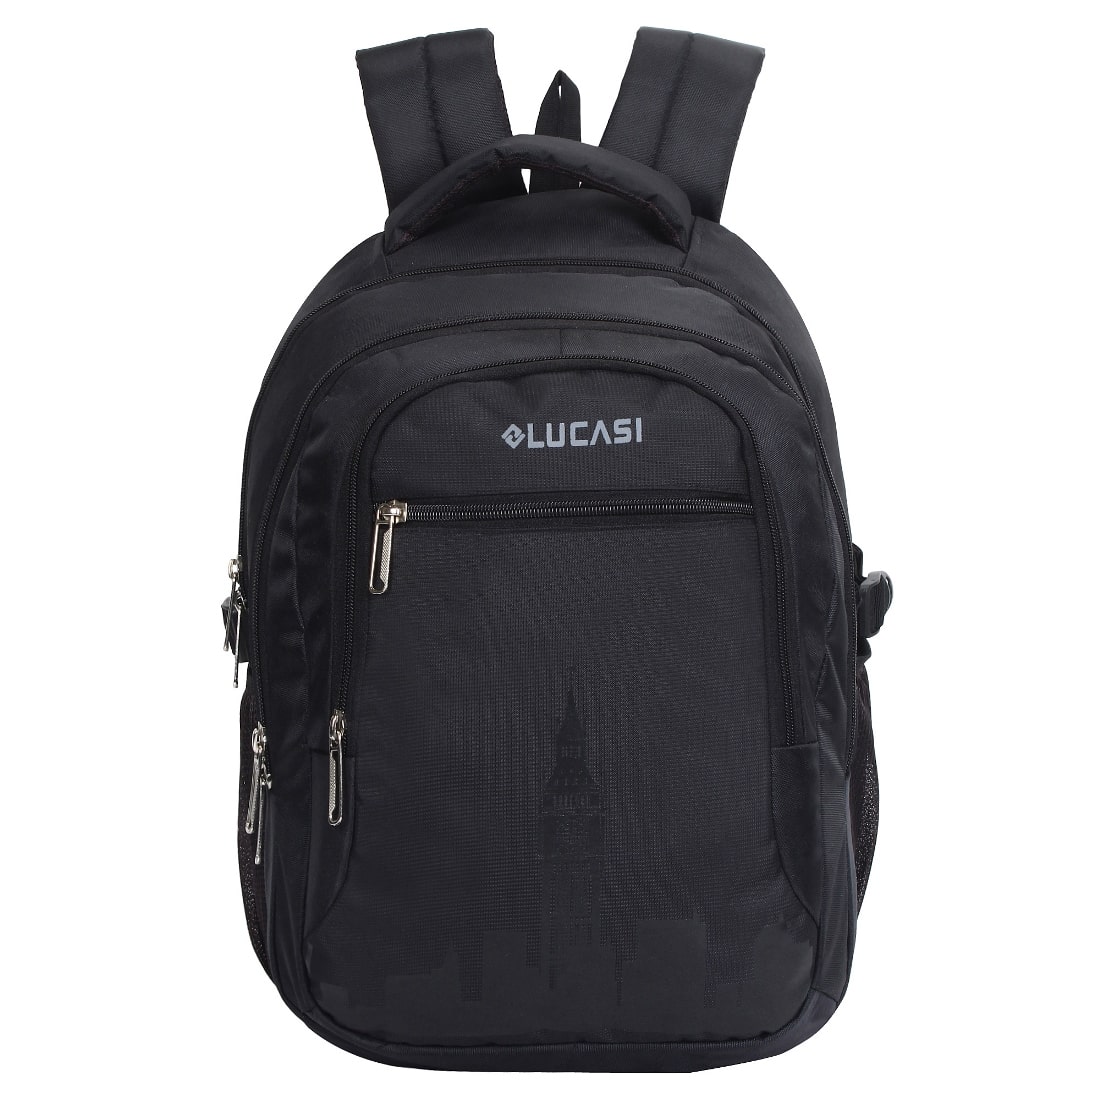 lucasi skyline black color backpack, front view having skyline print in black color, model no 341